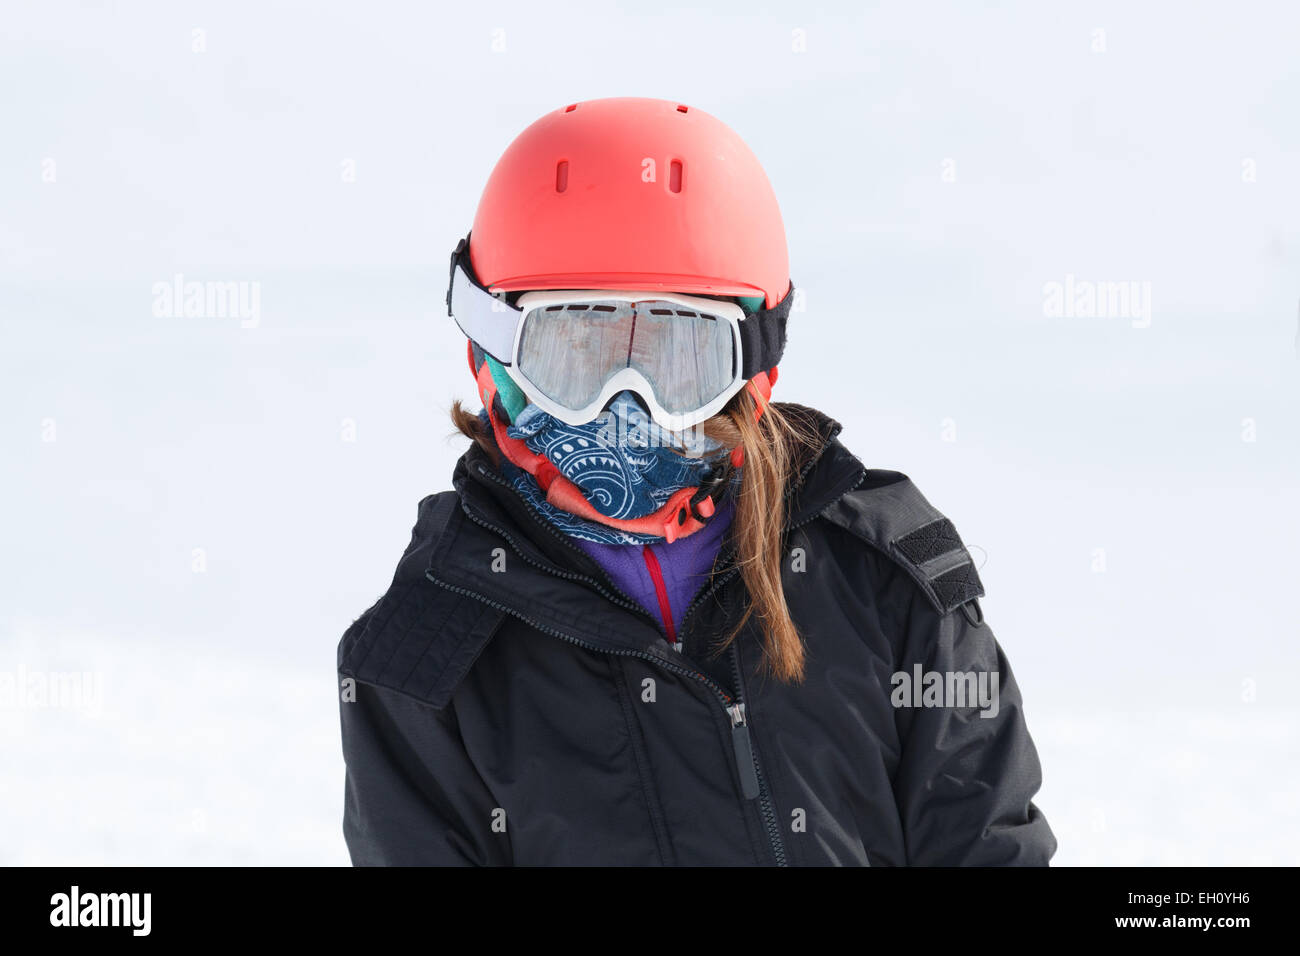 Mädchen (9 Jahre) Skifahrer Porträt eingewickelt im Ski-Ausrüstung mit orange Helm und Goggle Warm.  Keine Logos auf Kleidung Stockfoto